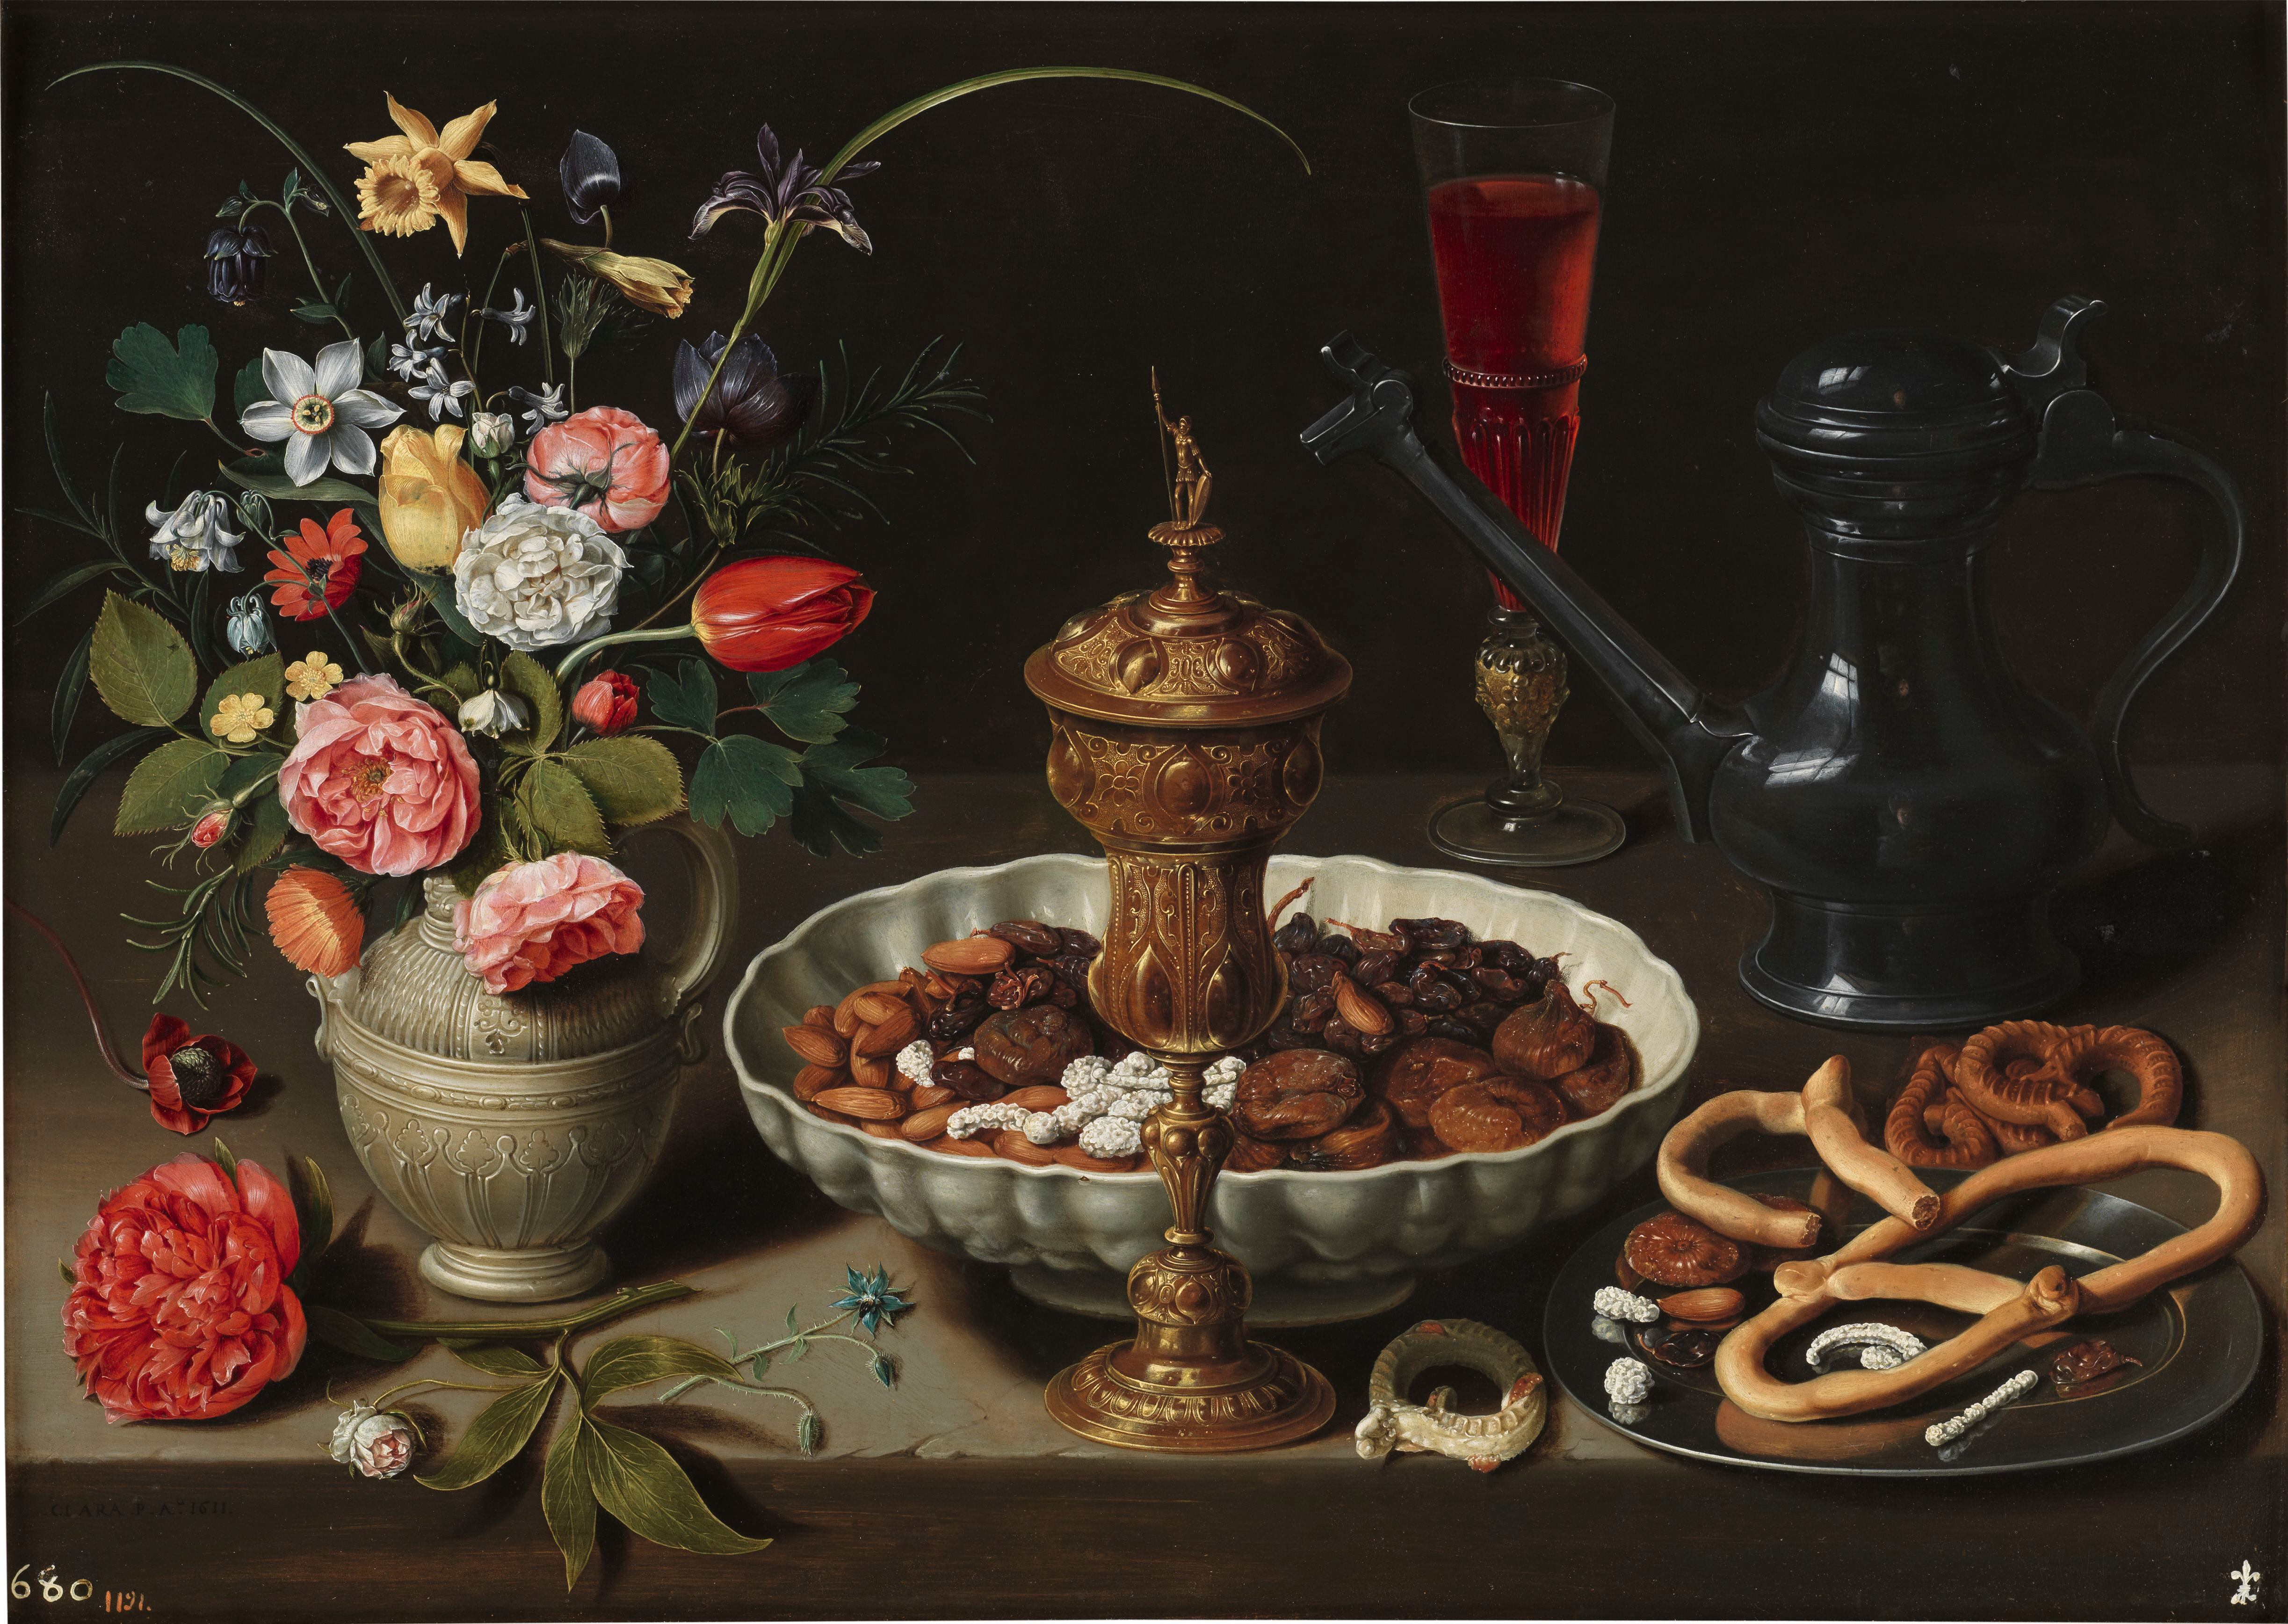 Bodegón con flores, copa de plata dorada, almendras, frutos secos, dulces, panecillos, vino y jarra de Peltre, 1611. Obra de Clara Peeters.